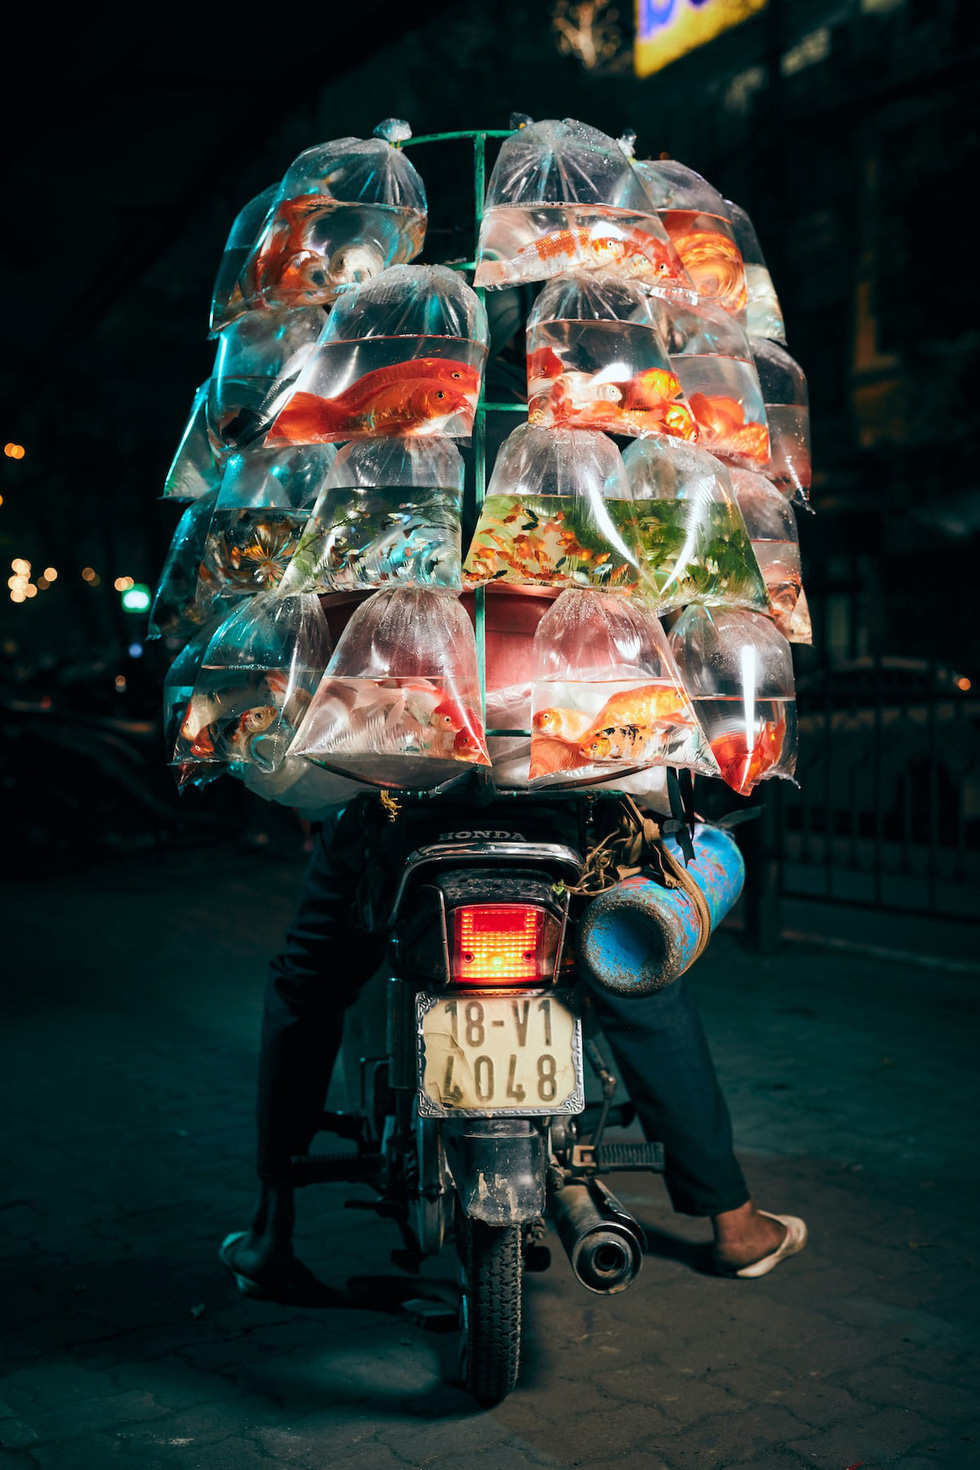 Vượt qua 36.000 tác phẩm, bức ảnh chụp xe bán cá cảnh rong ở Việt Nam chiến thắng giải thưởng nhiếp ảnh lớn ở Mỹ - Ảnh 1.